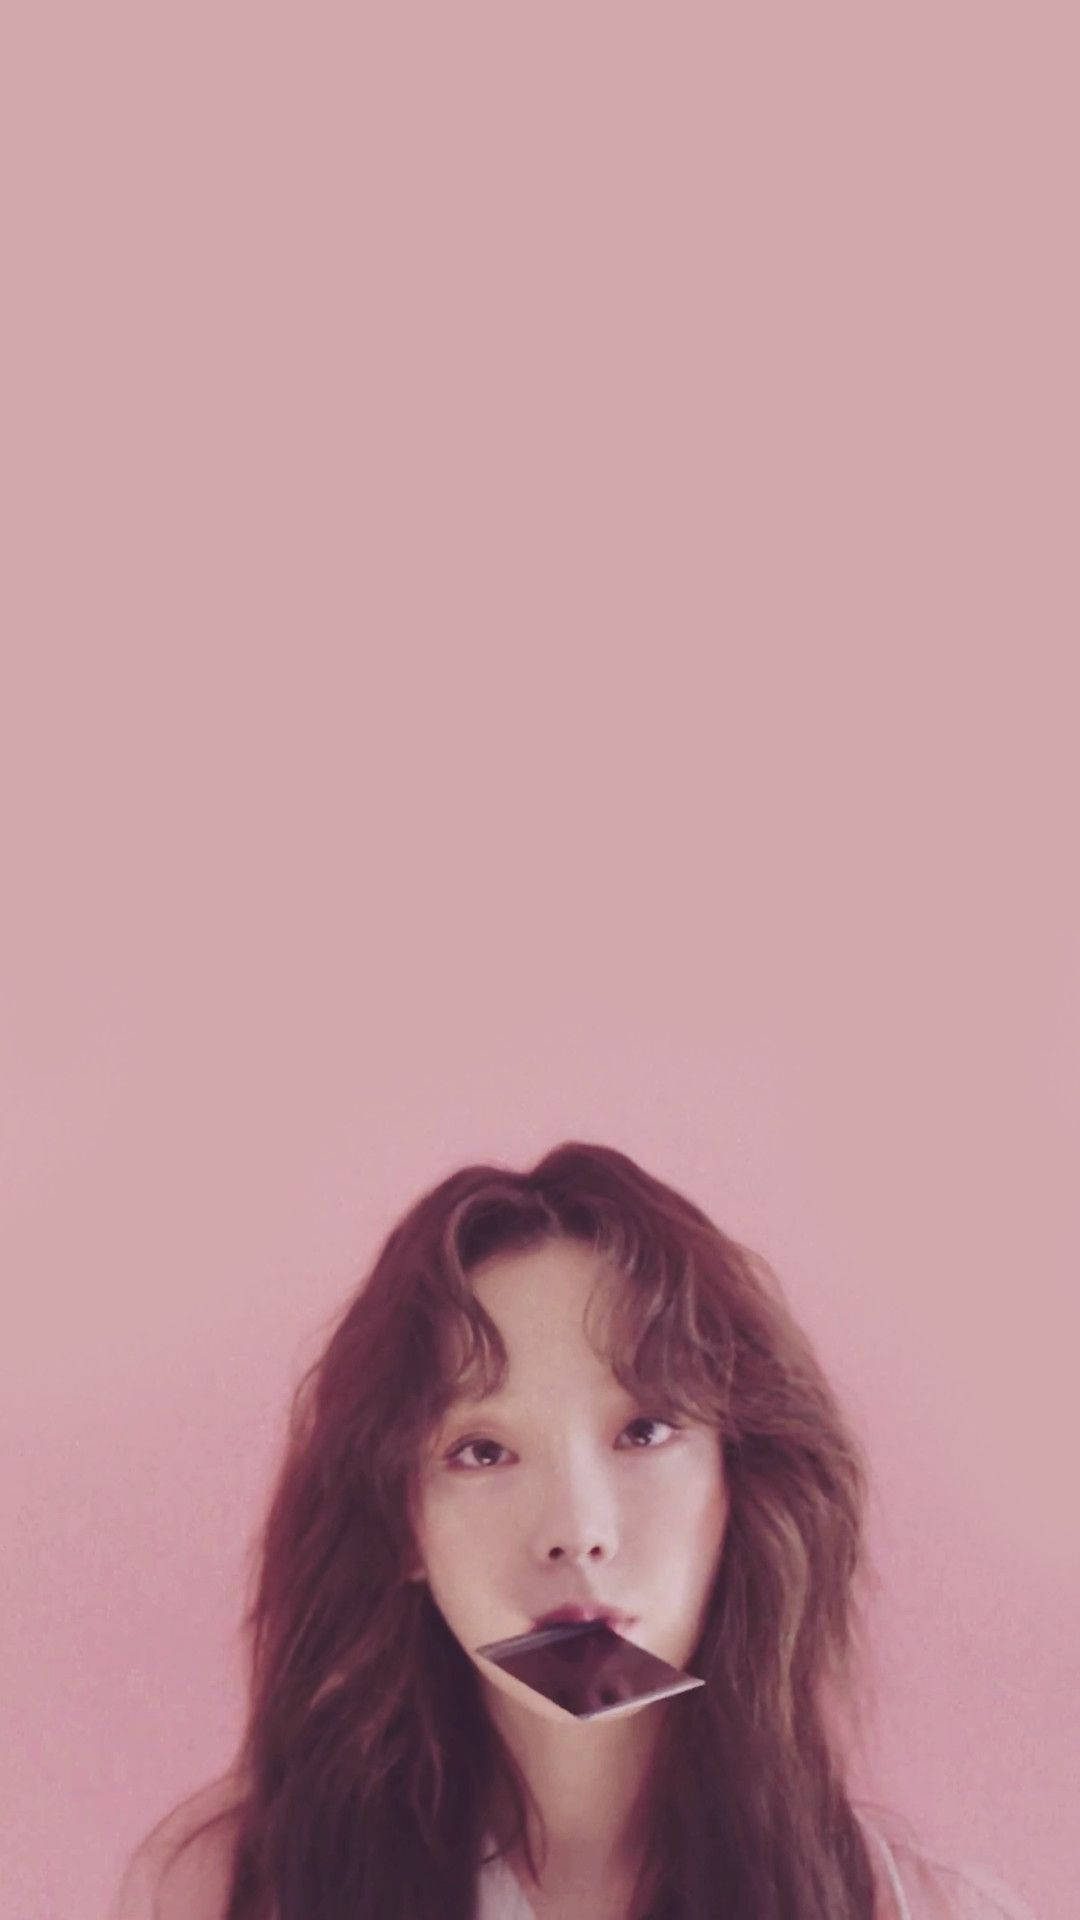 Taeyeonbeißt In Eine Polaroid-kamera. Wallpaper